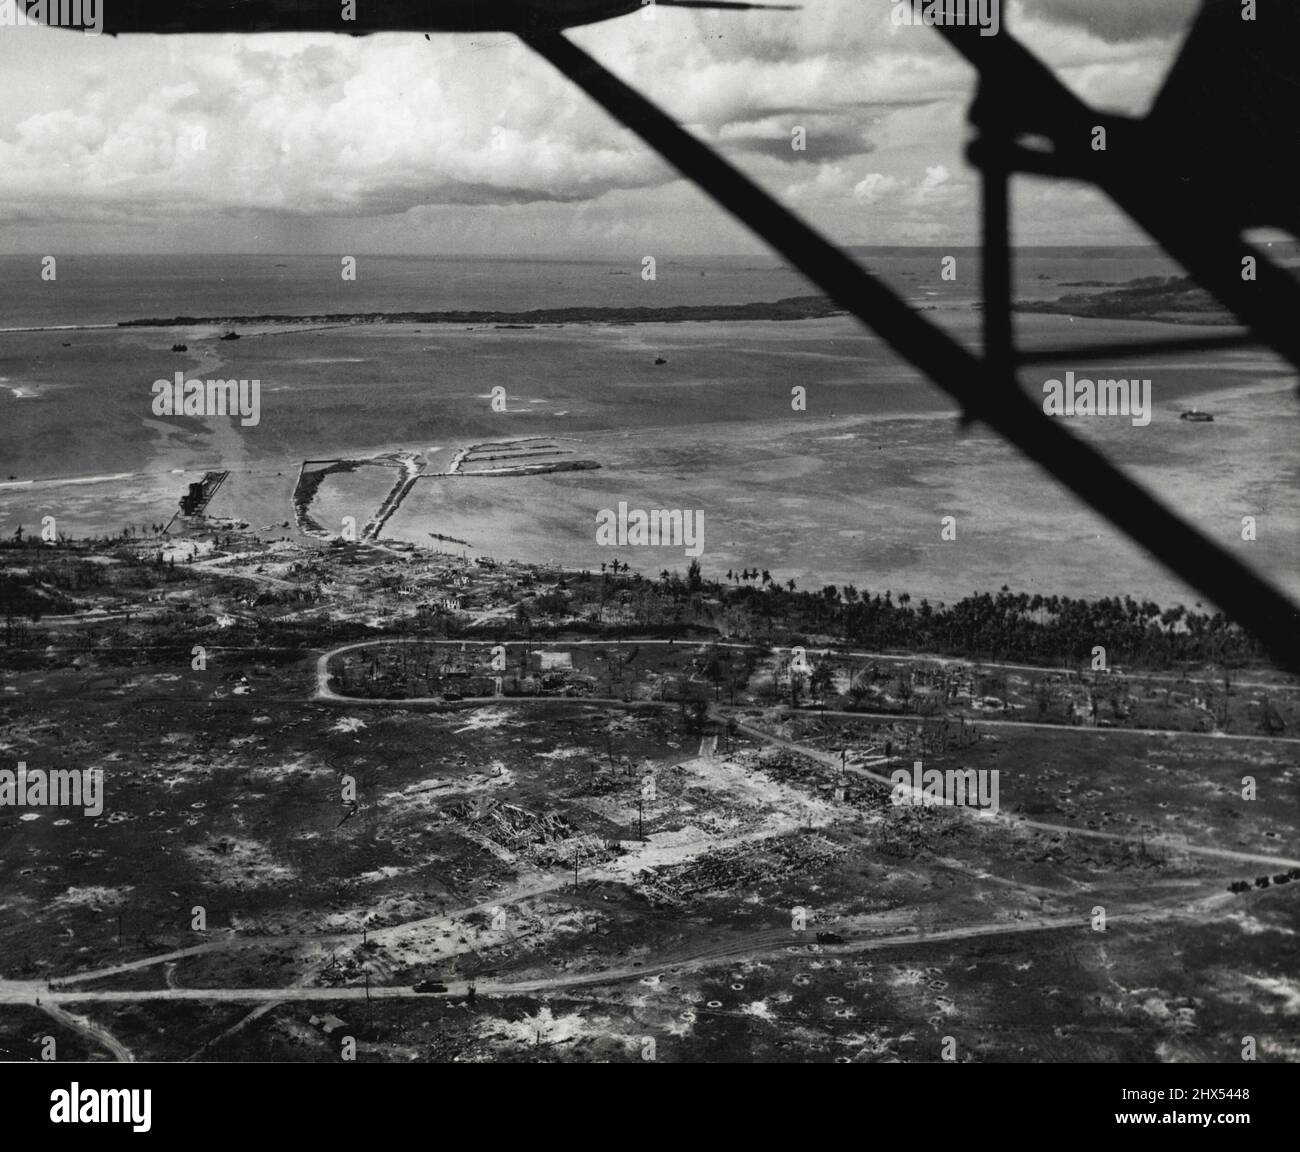 Guam-Szene -- Dieses Luftbild zeigt die Ruinen der Marine Barracks (unten) und der Stadt Sumay auf der Orote Peninsula, Guam, die von den Marineinfanteristen nach einem grandiosen Flug- und Marineschlagen wieder erobert wurden. Im Hintergrund ist Carbes Island (links) und der Piti Navy Yard (rechts, zwischen den Tragflächen des Flugzeugs) zu sehen. 08. Juli 1944. (Foto vom offiziellen US Marine Corps-Foto). Stockfoto